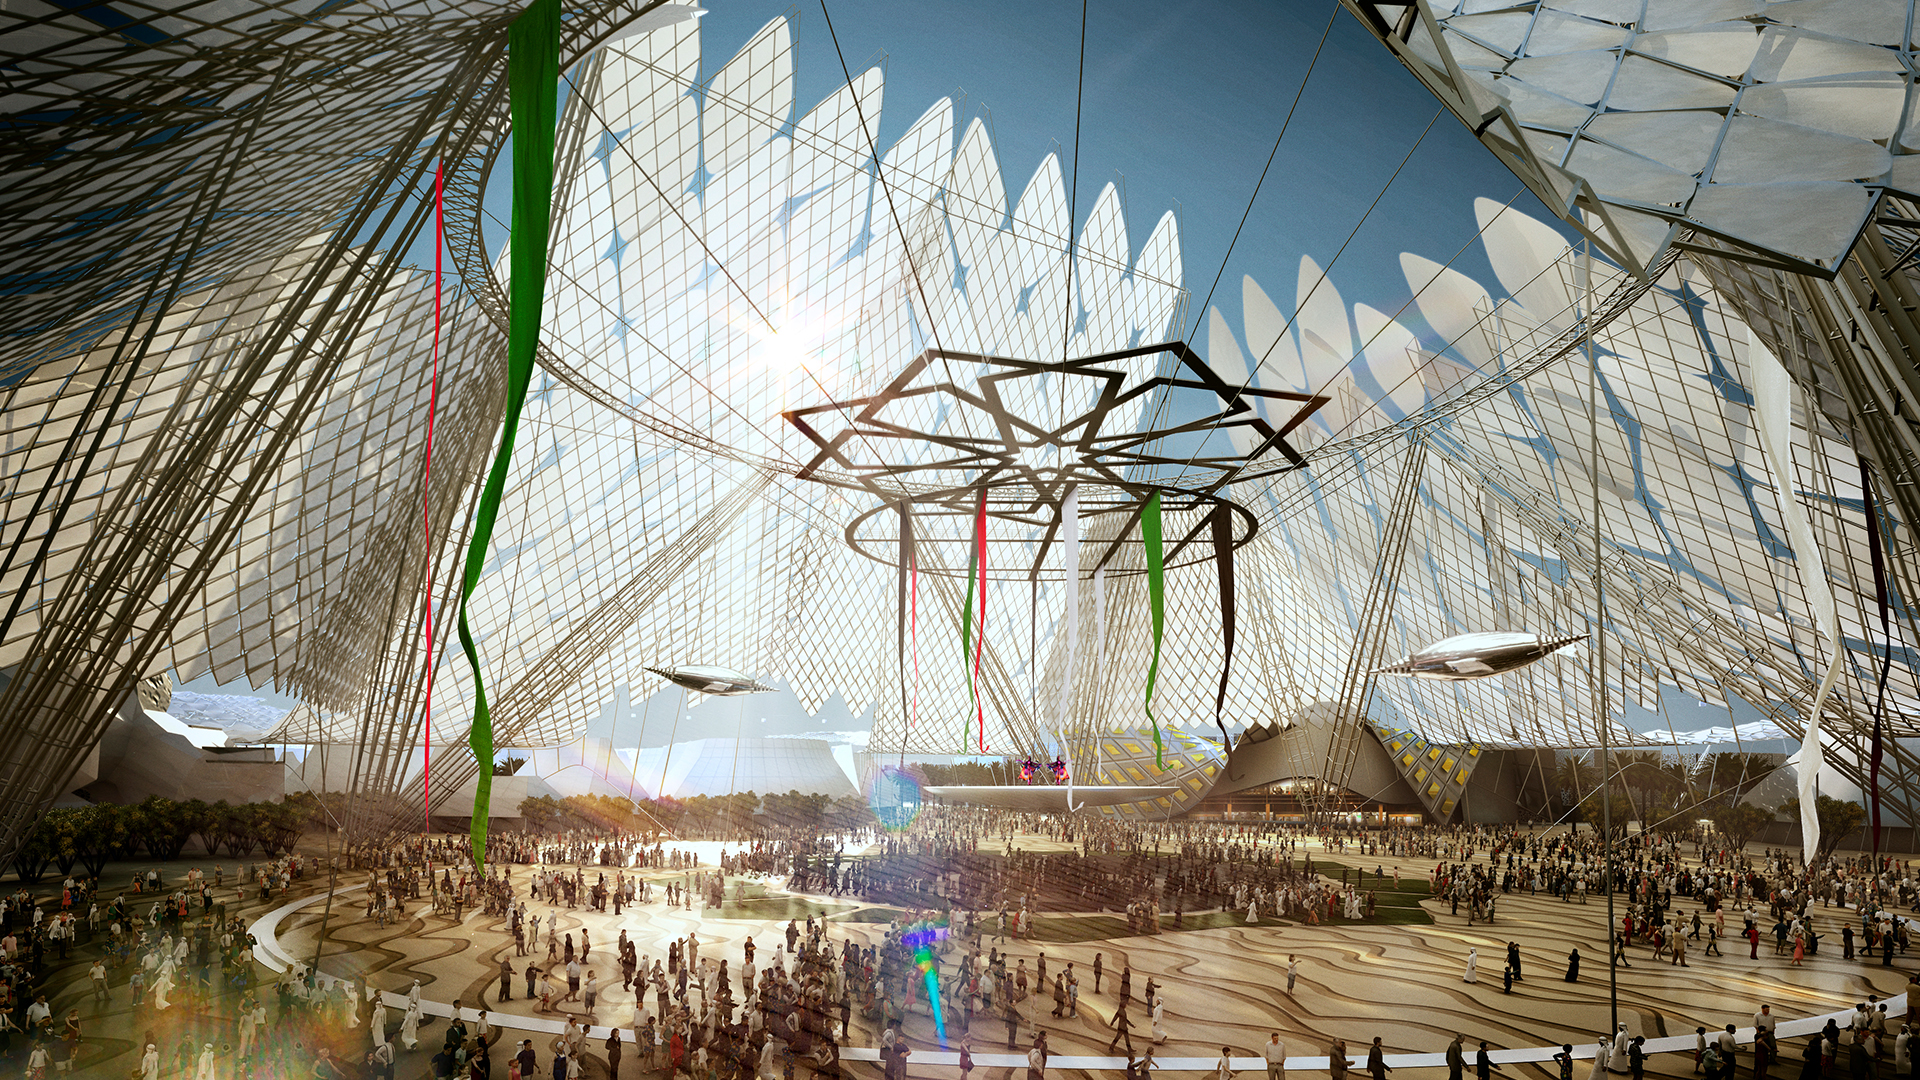 Dubai 2020 World Expo Master Plan - Populous